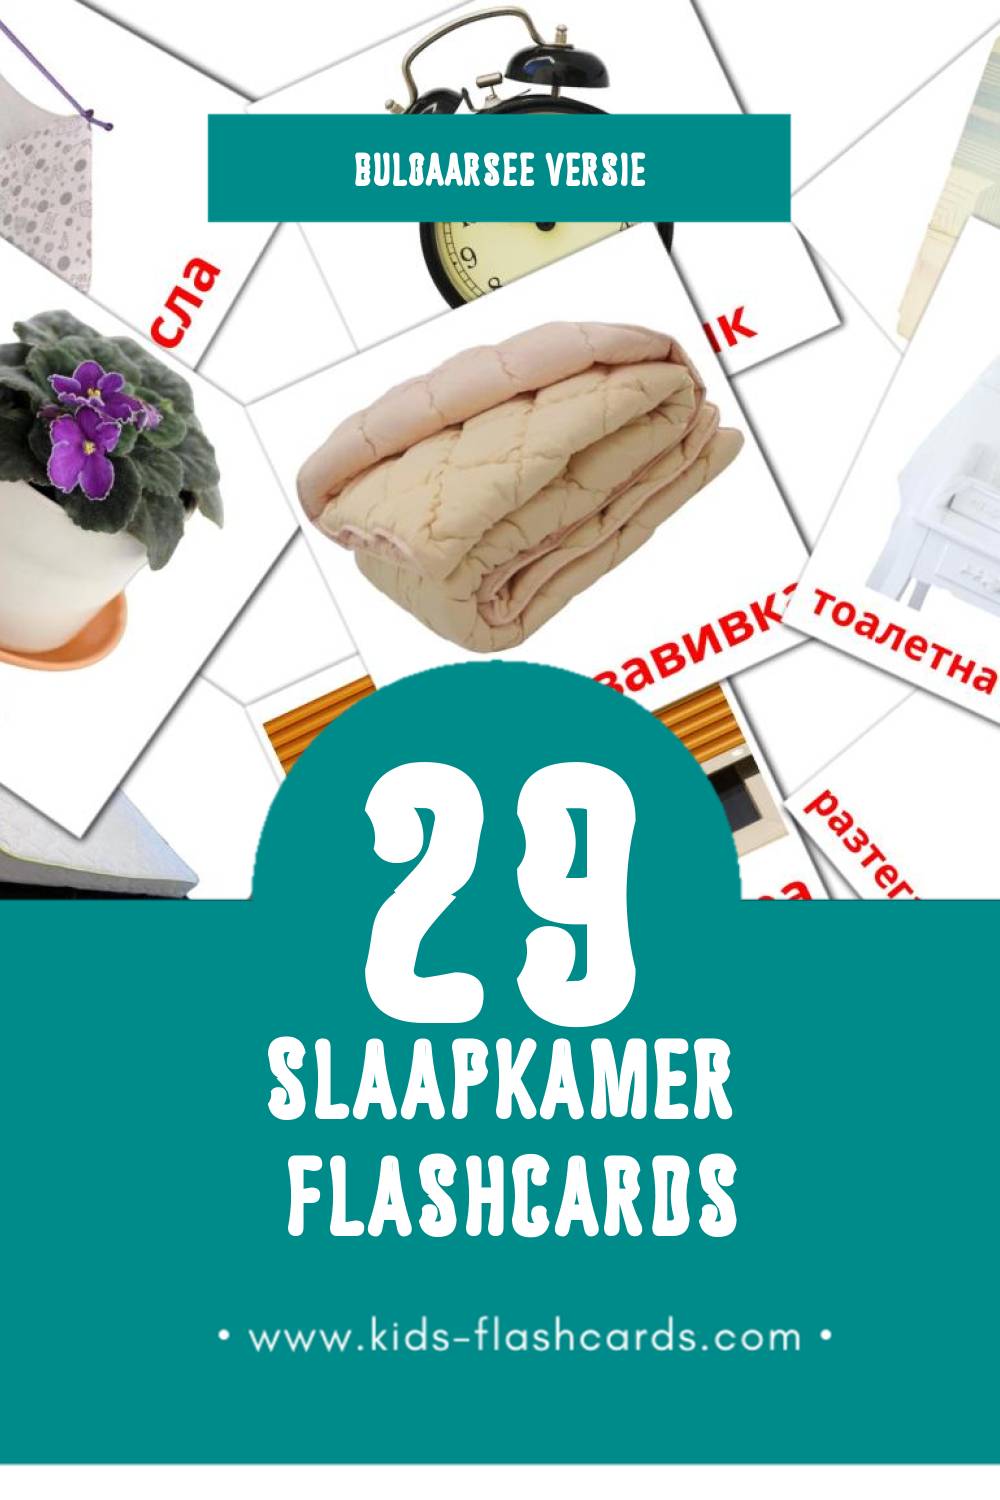 Visuele Спалня Flashcards voor Kleuters (29 kaarten in het Bulgaarse)